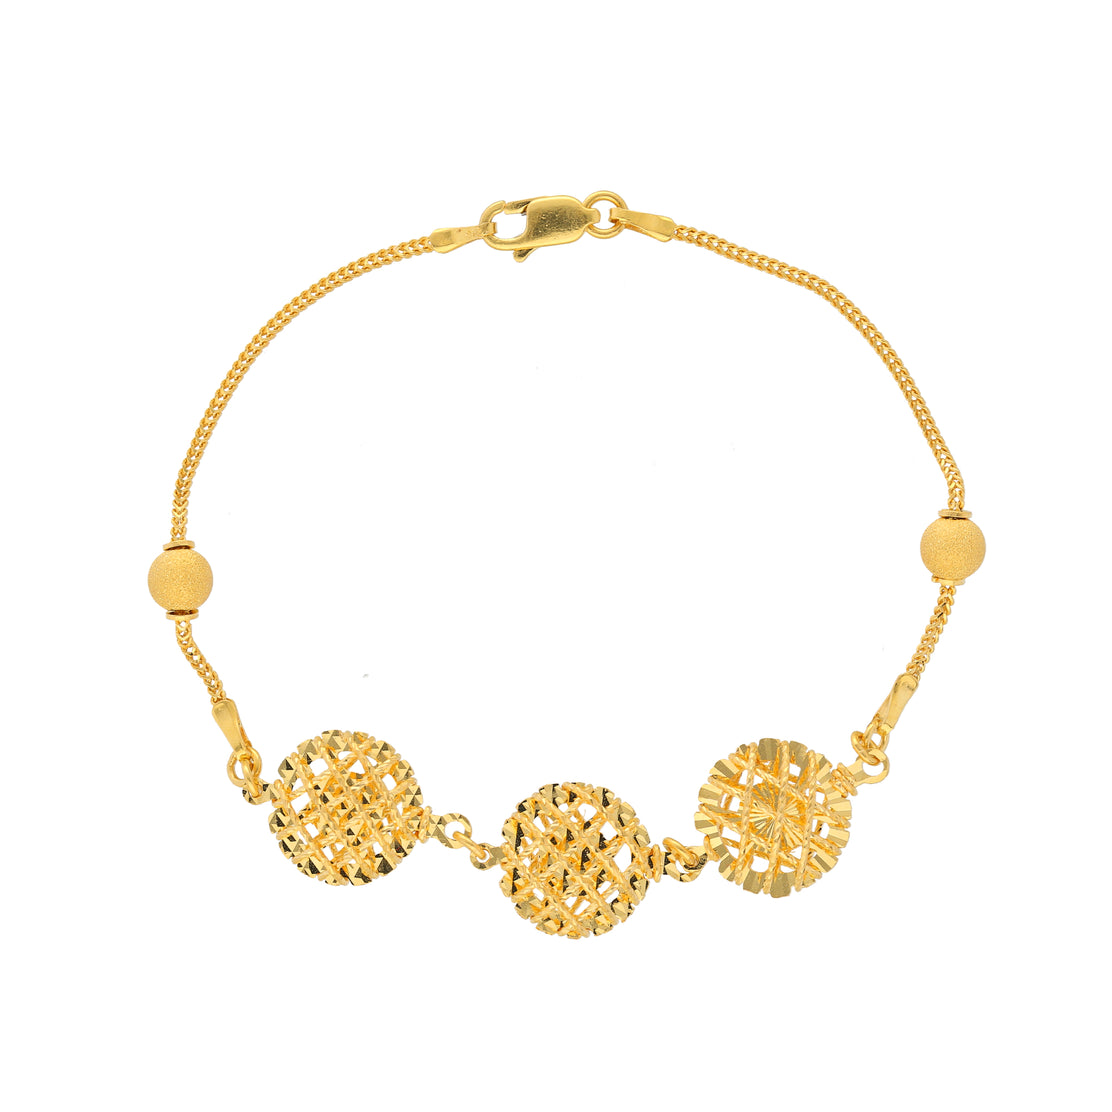 22K Gold Bracelet For Women - 235-GBR3317 in 4.750 Grams